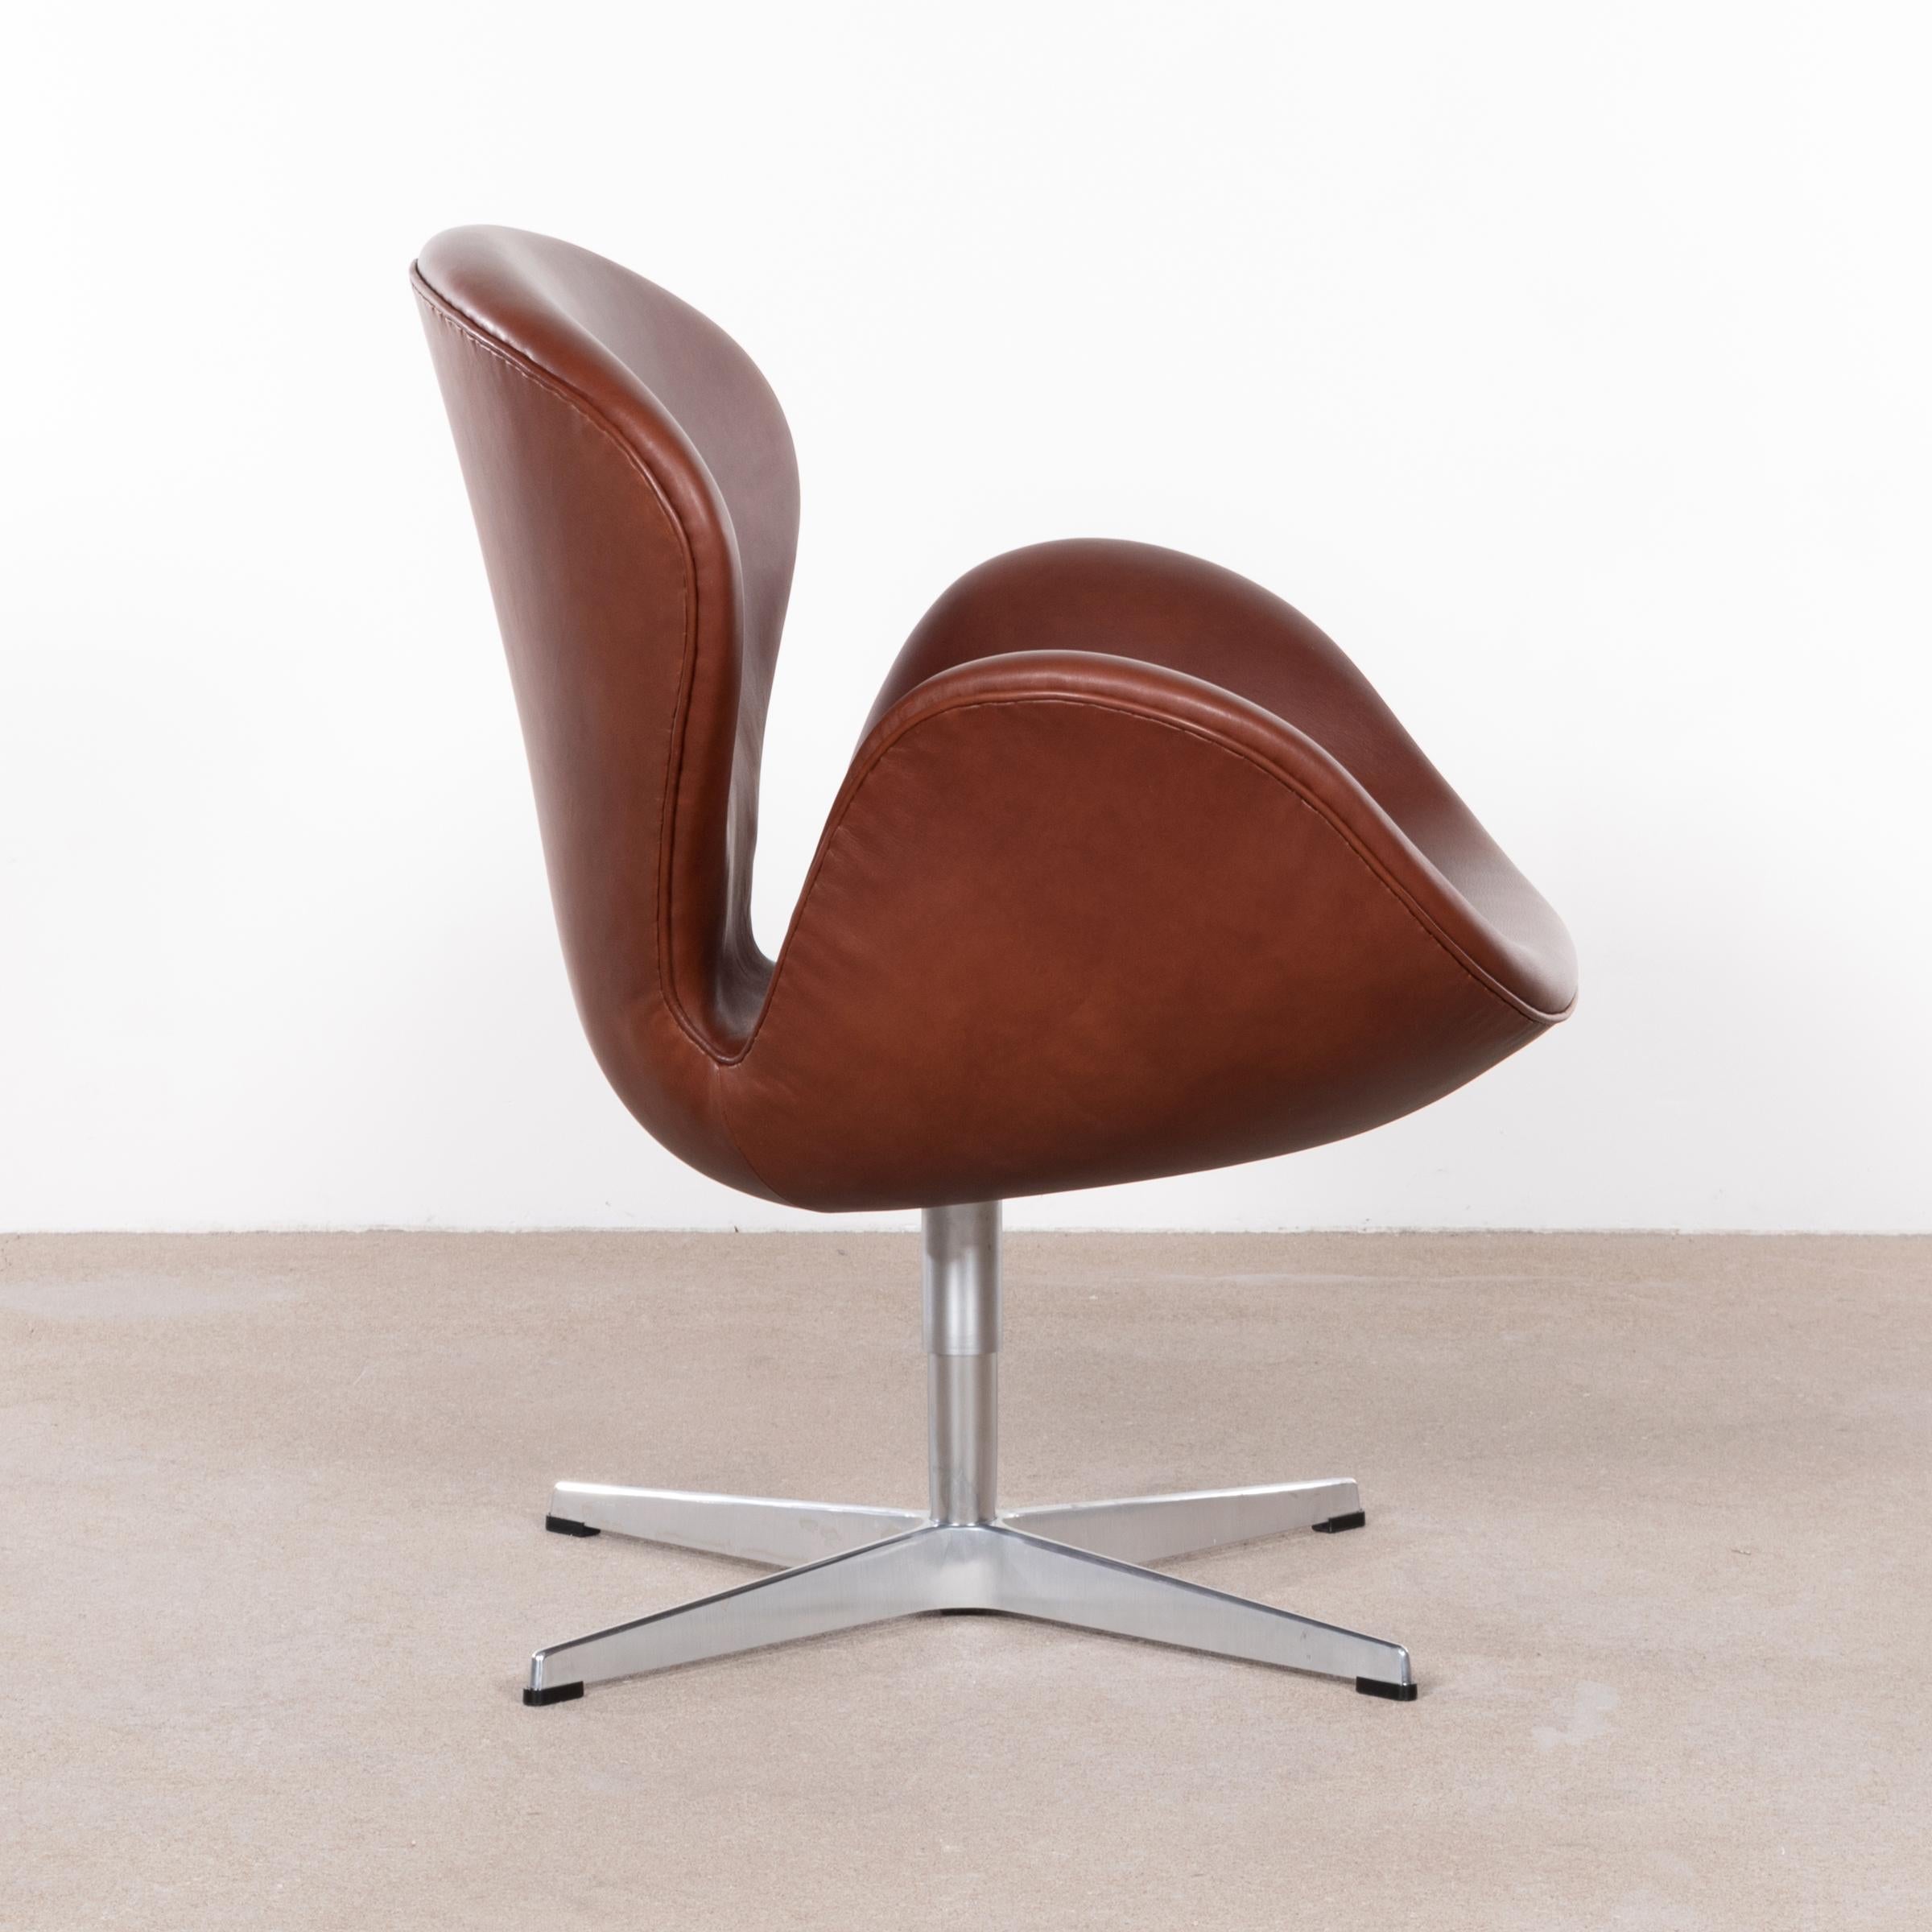 Scandinavian Modern Arne Jacobsen Swan Chair 'Model 3320' in Brown Leather for Fritz Hansen Denmark